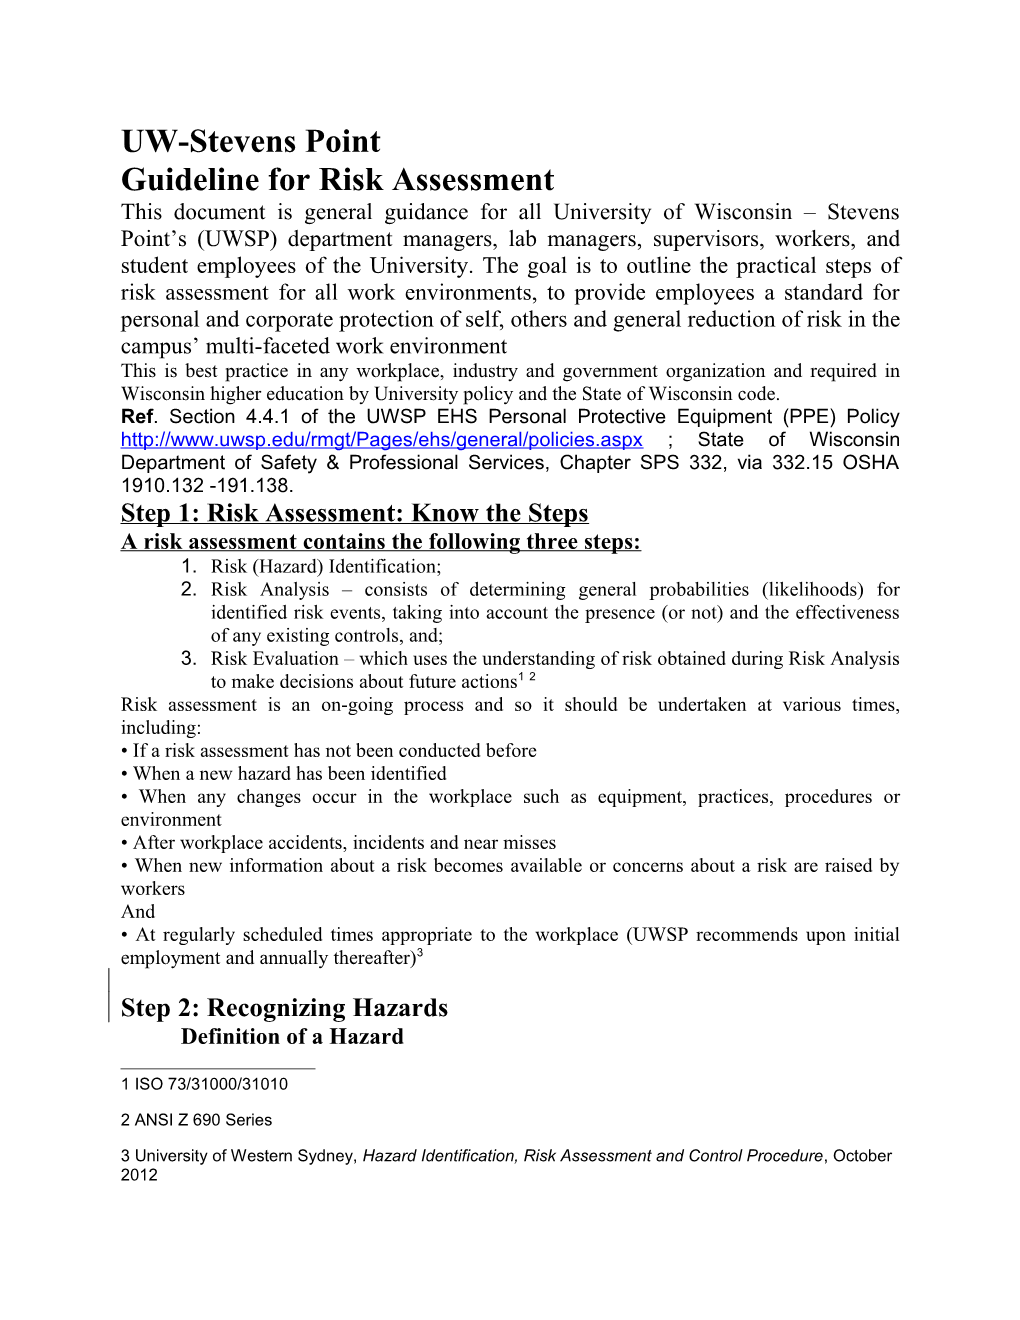 Guideline for Risk Assessment